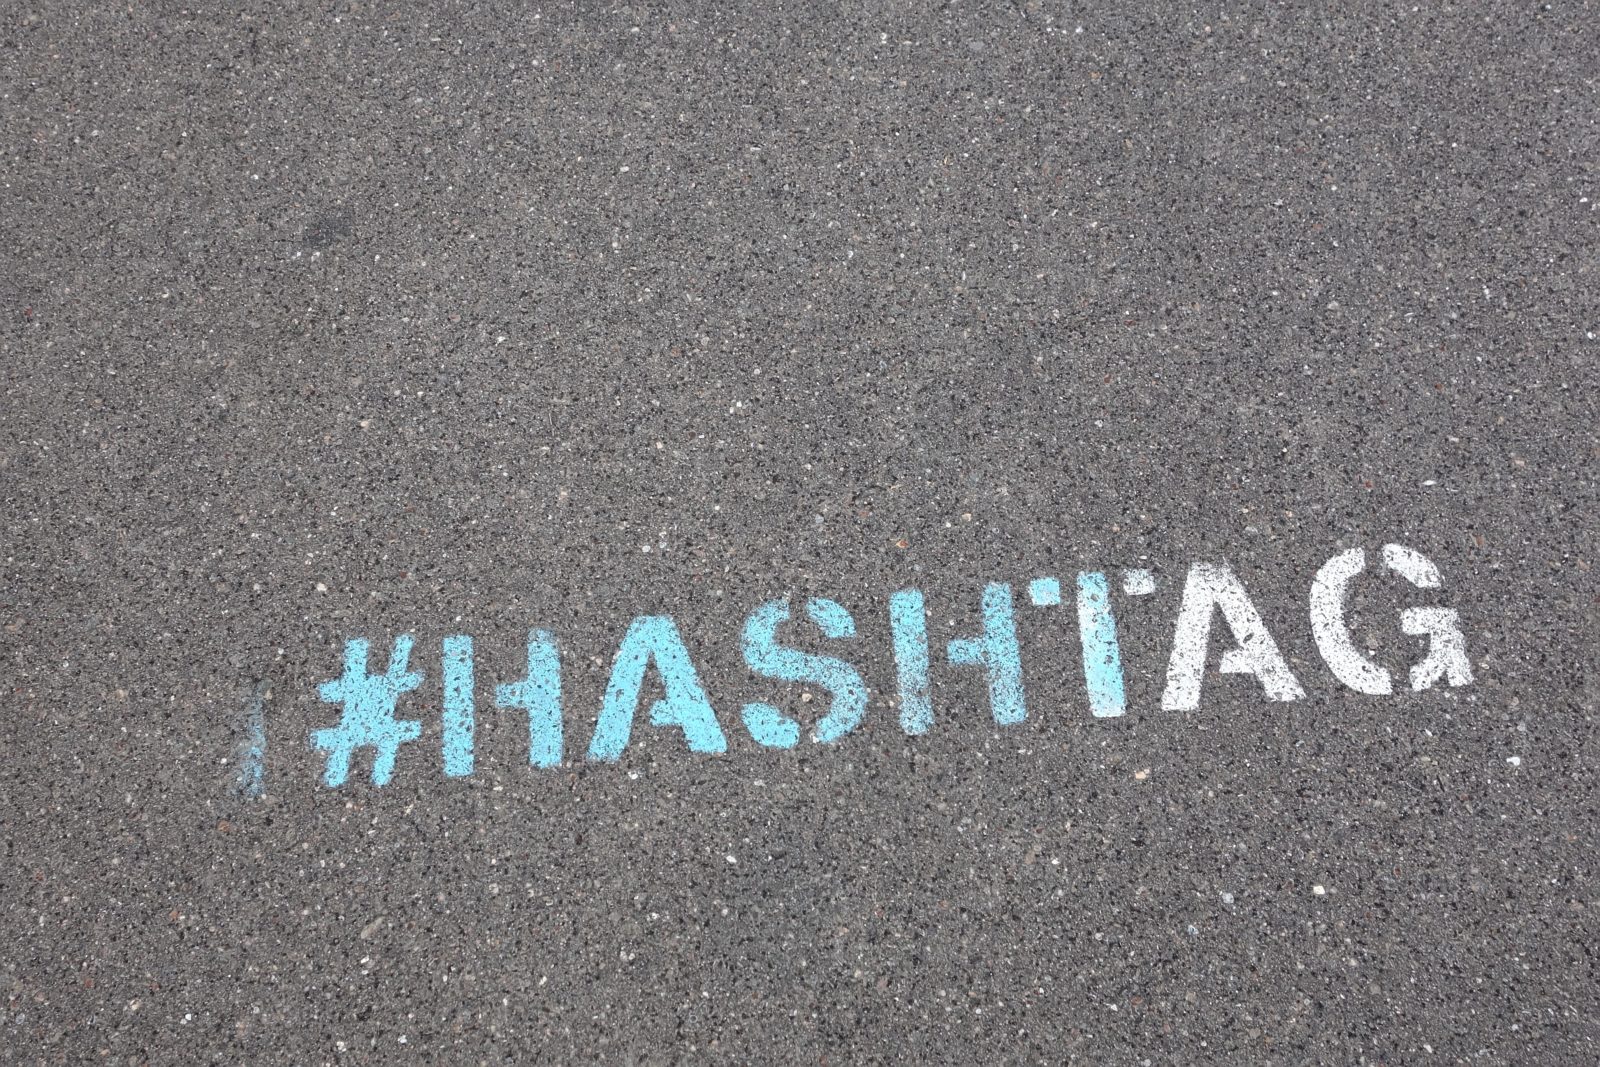 hashtag sidewalk chalk